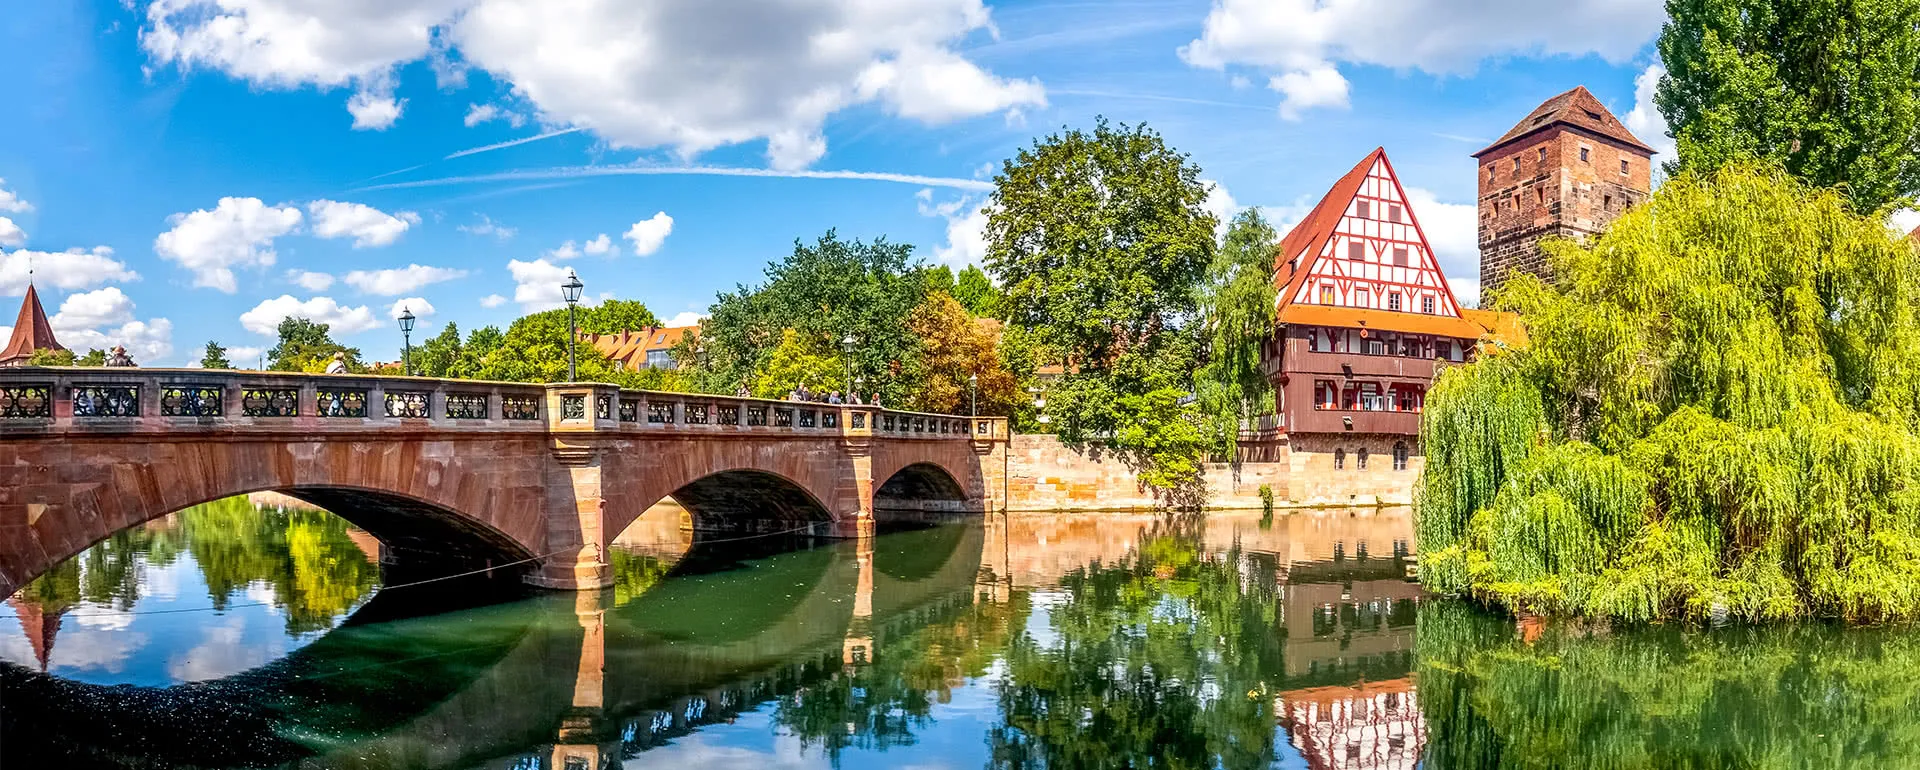 Nürnberg - das Reiseziel für Geschäftsreisen